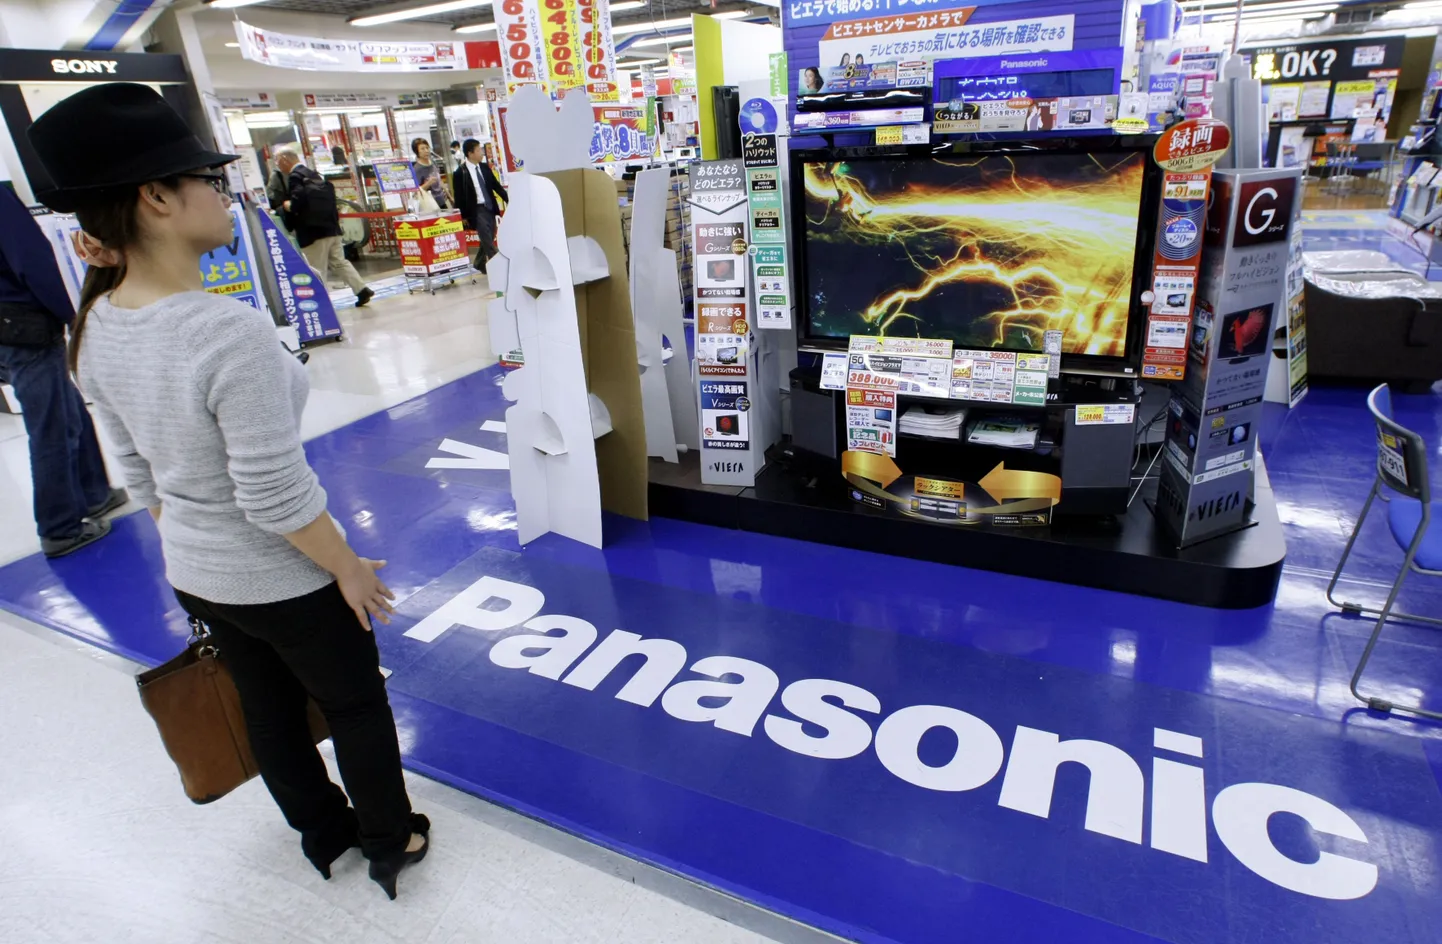 Panasonicu väljapanek elektroonikapoes Tokyos.